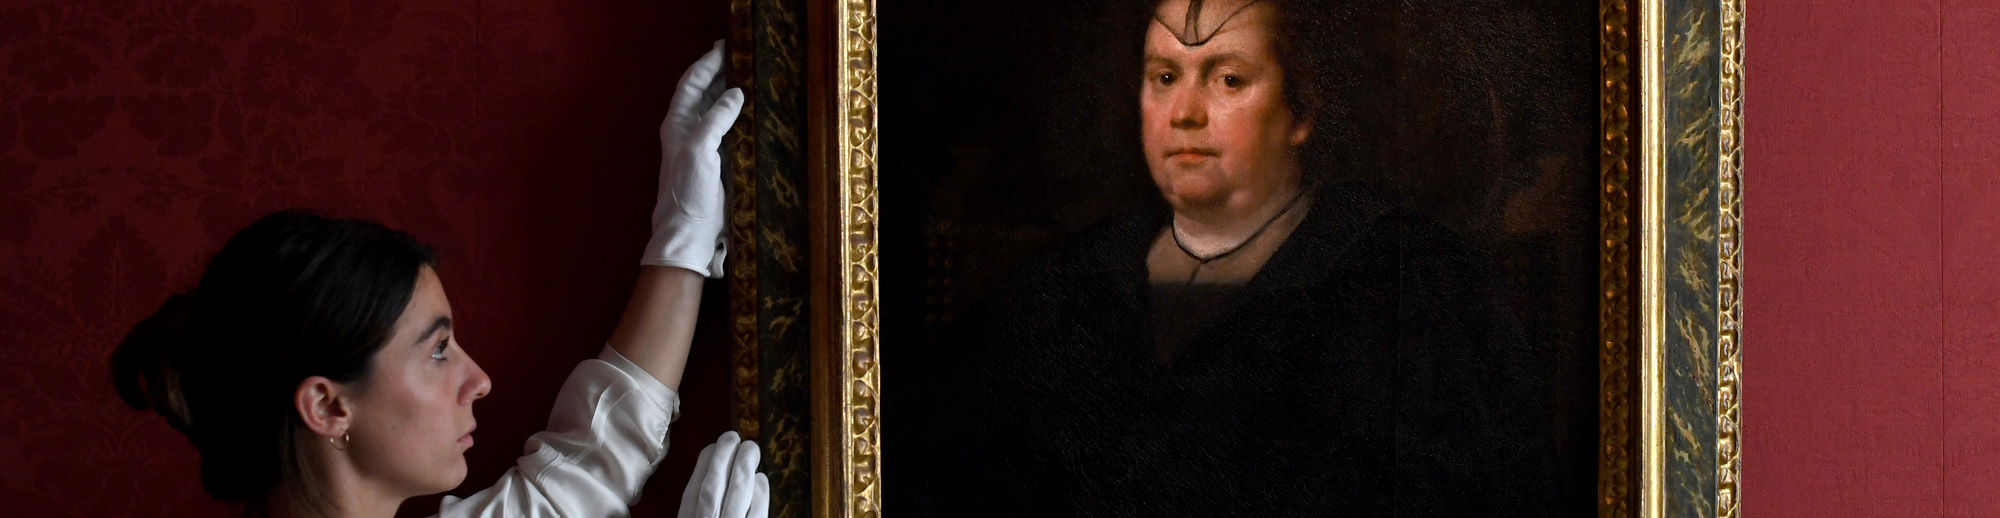 La “Papissa” de Velázquez se remata en 2.495.000 libras